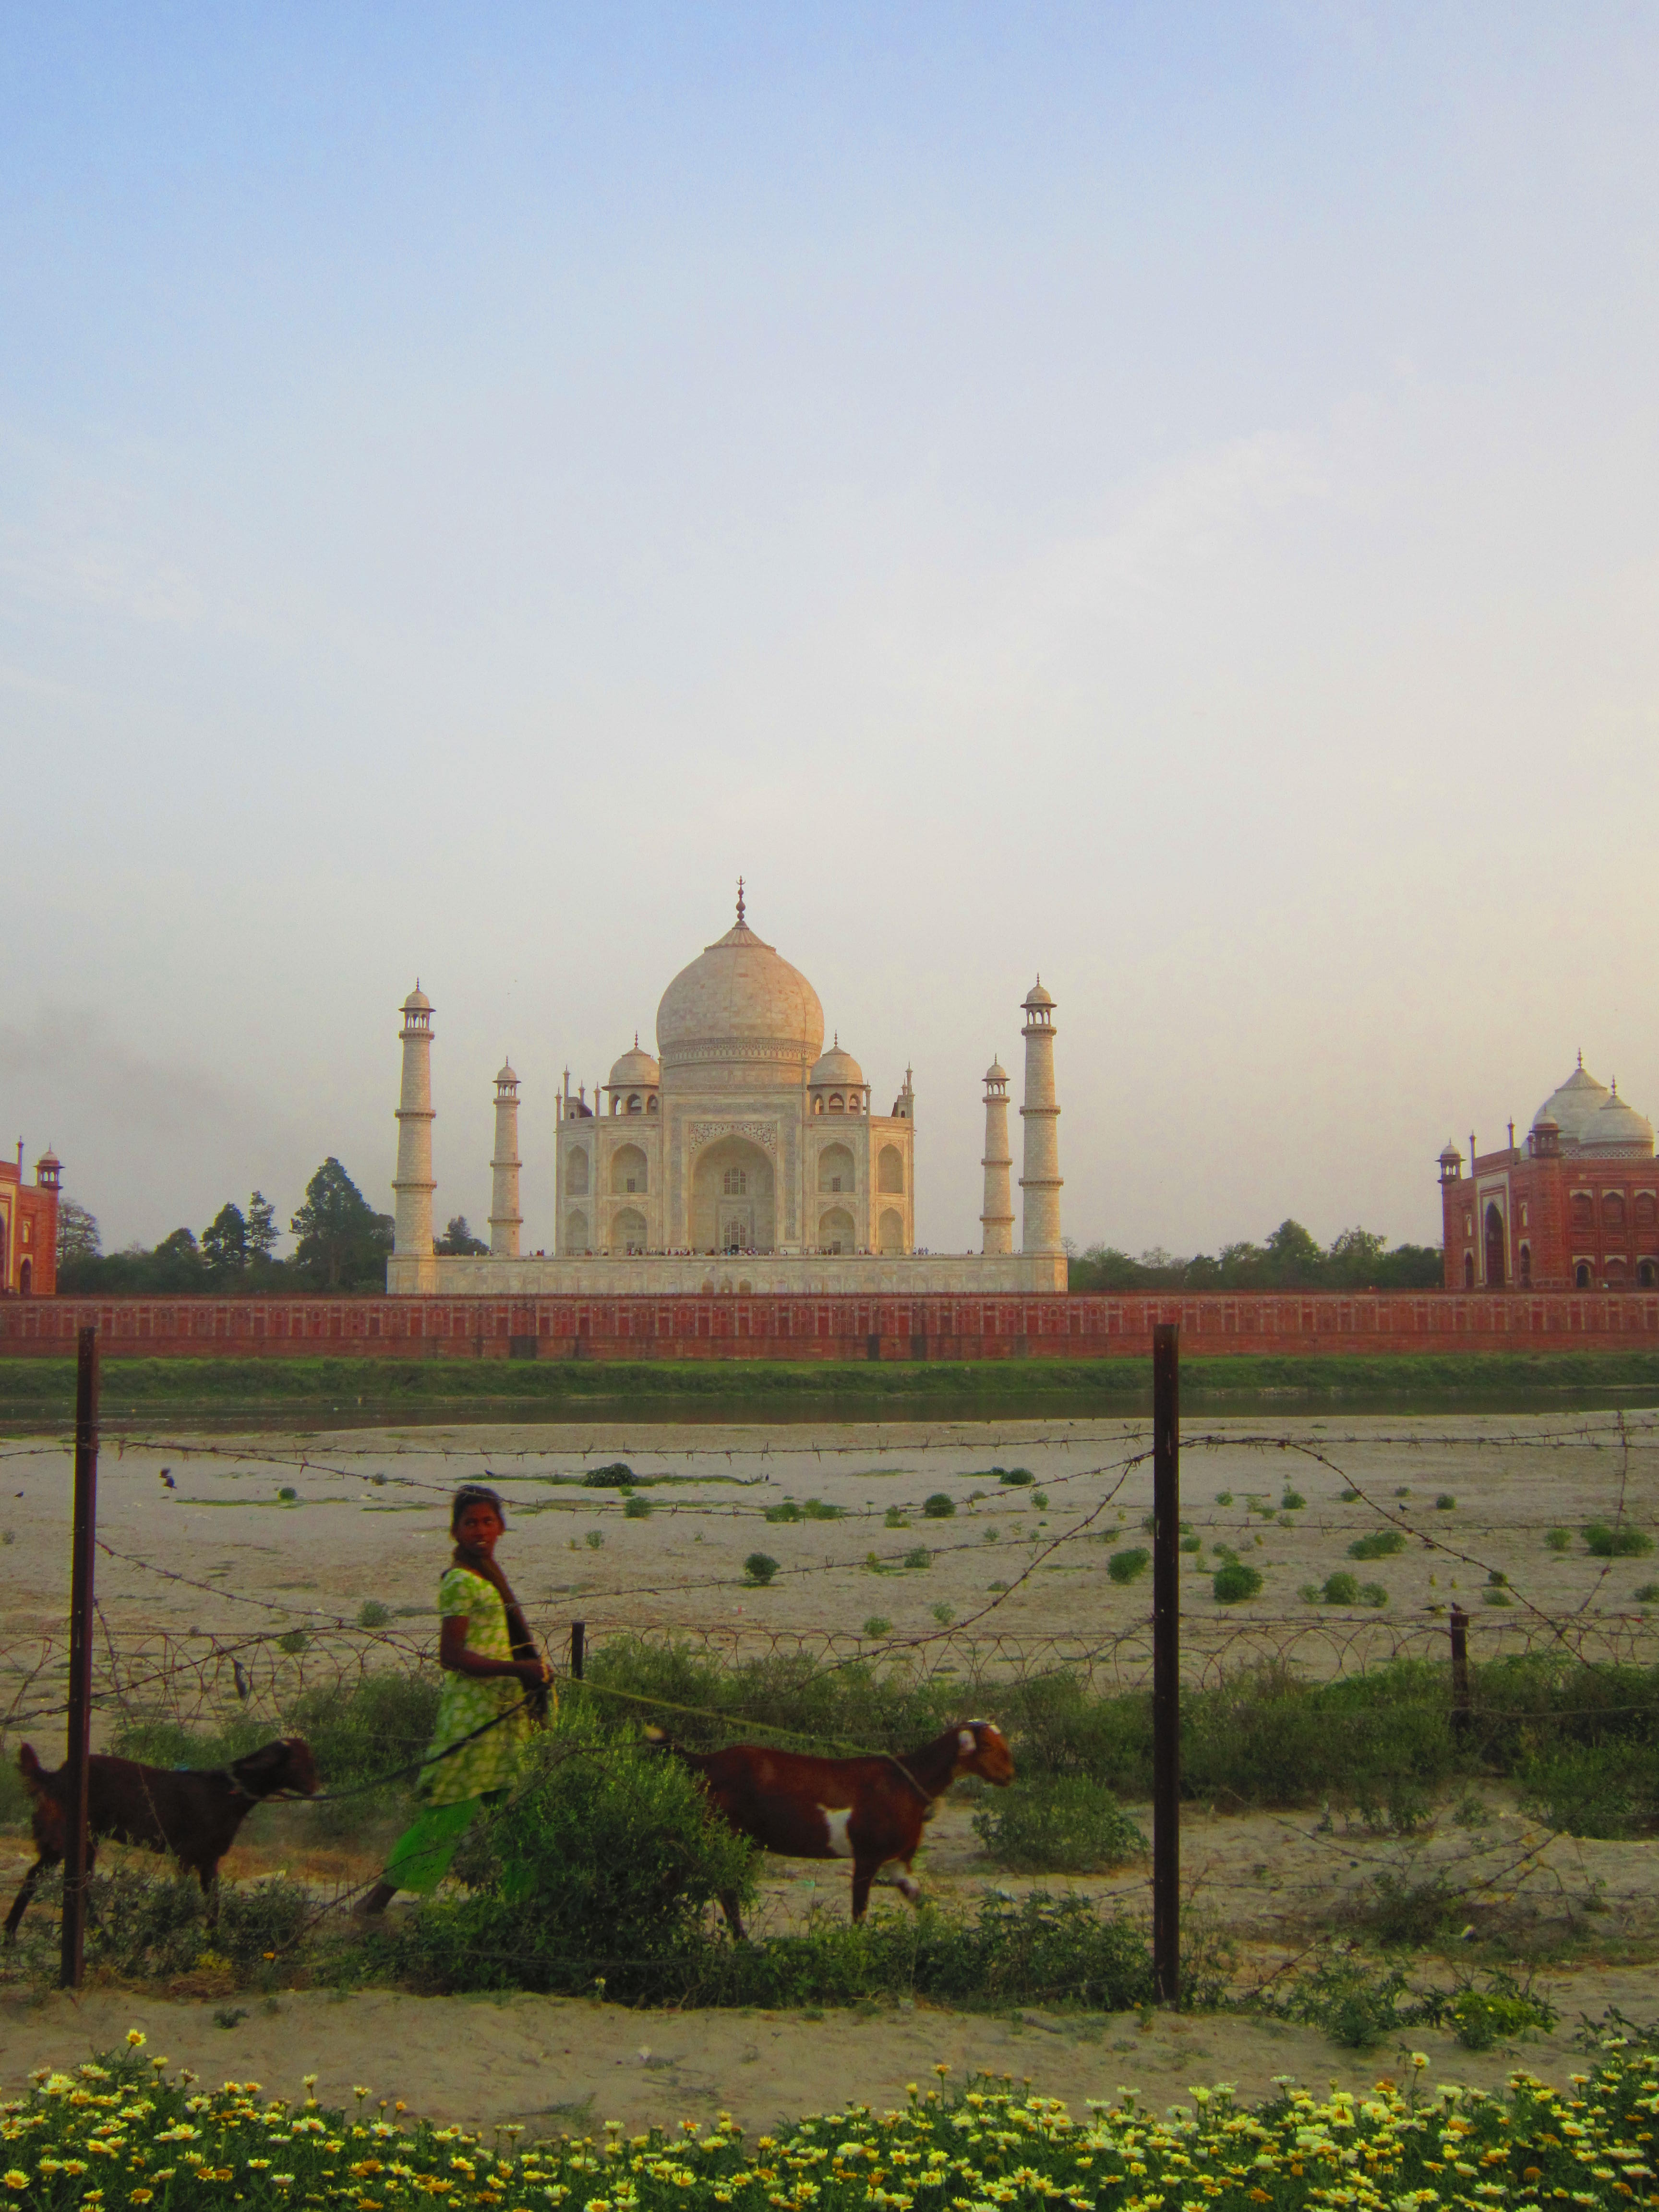 Taj Mahal, India